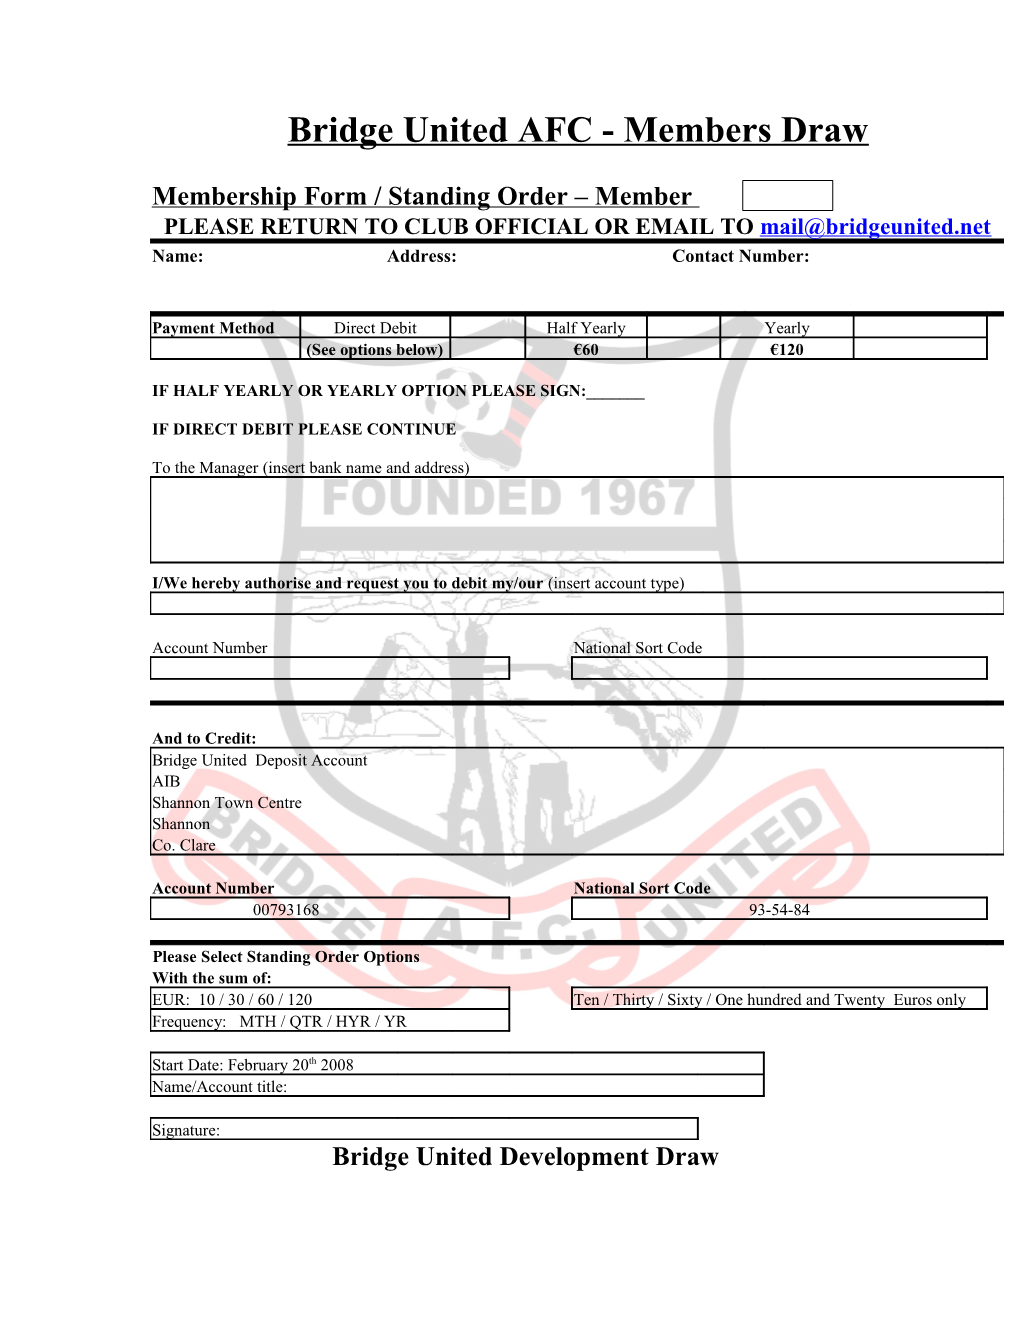 Membership Form / Standing Order Member